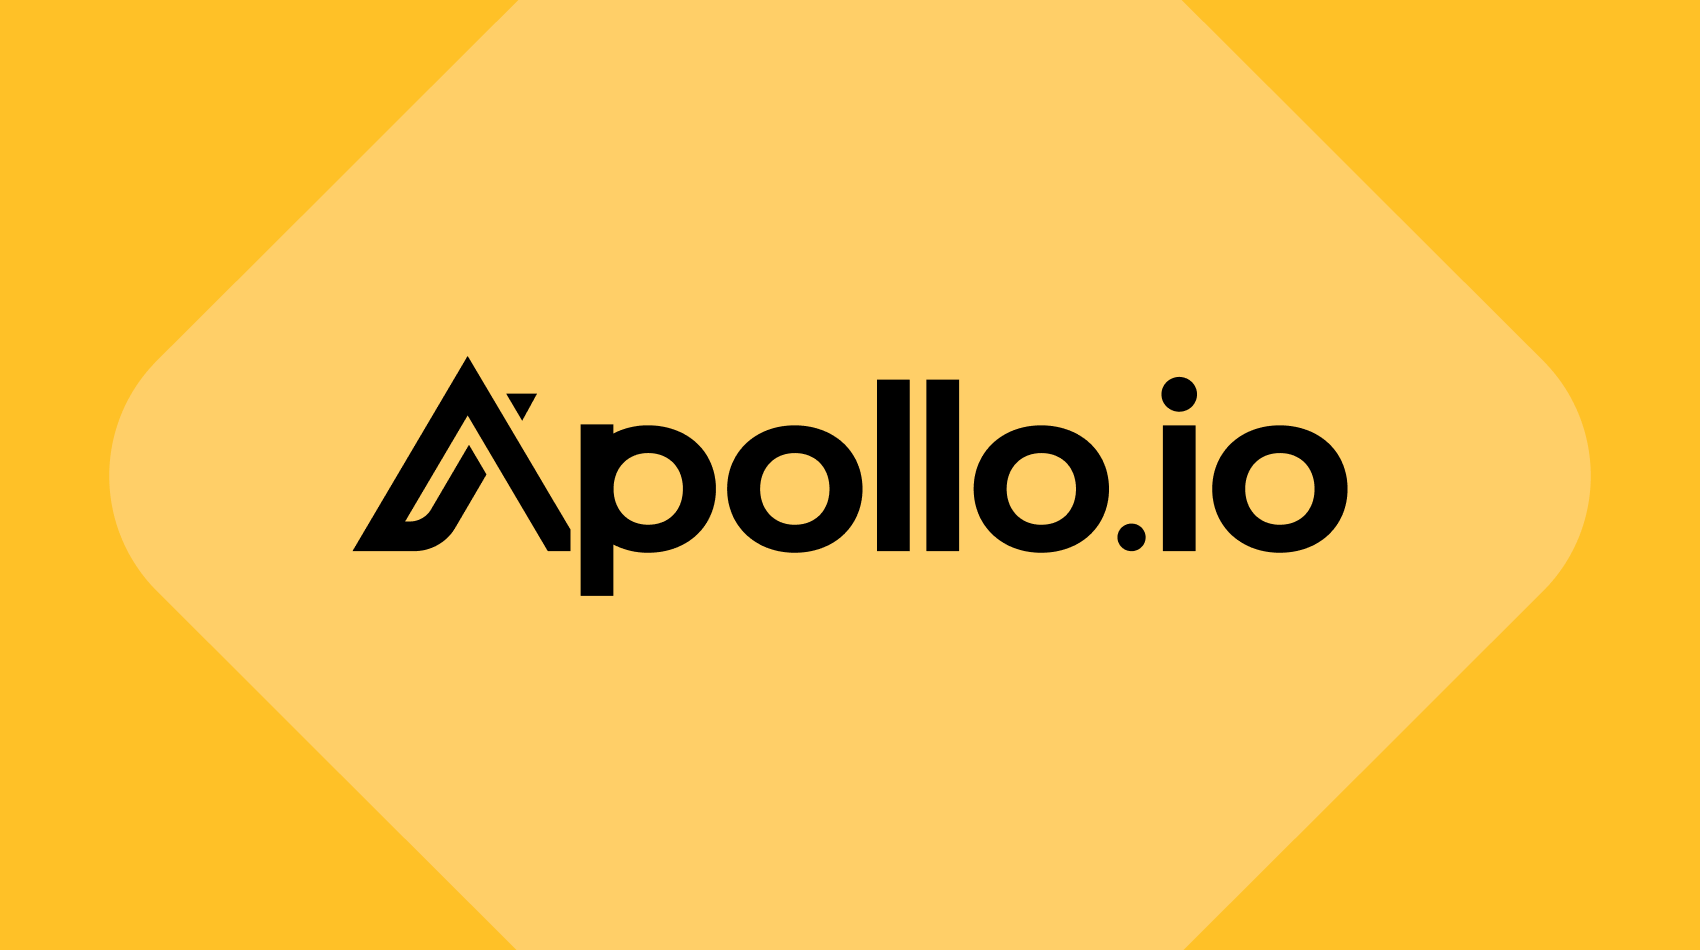 APOLLO.IO users